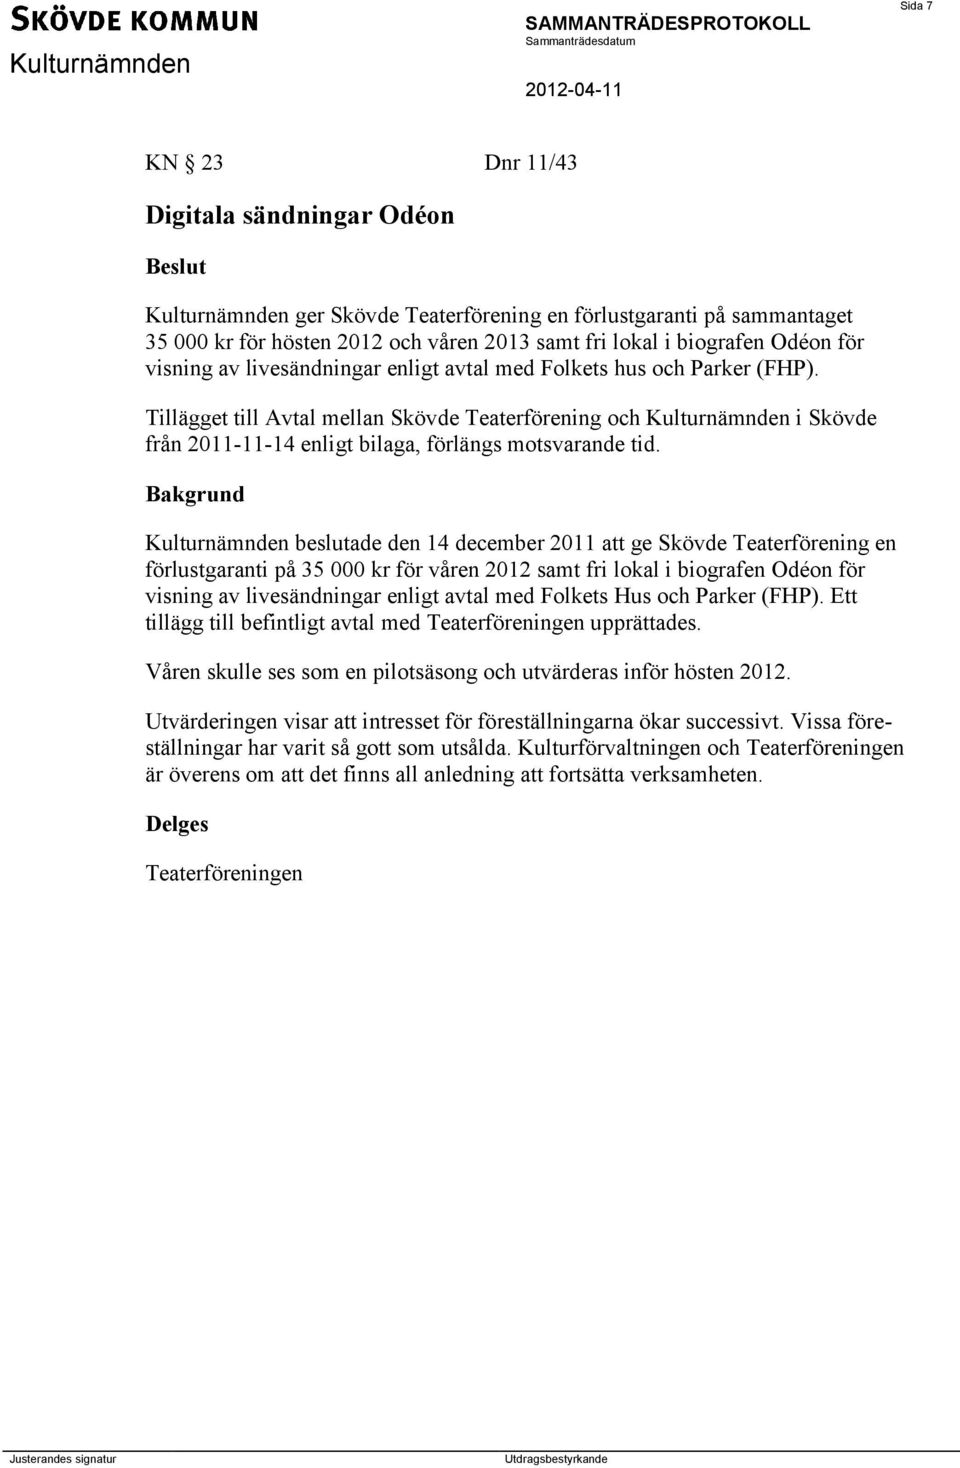 Tillägget till Avtal mellan Skövde Teaterförening och Kulturnämnden i Skövde från 2011-11-14 enligt bilaga, förlängs motsvarande tid.